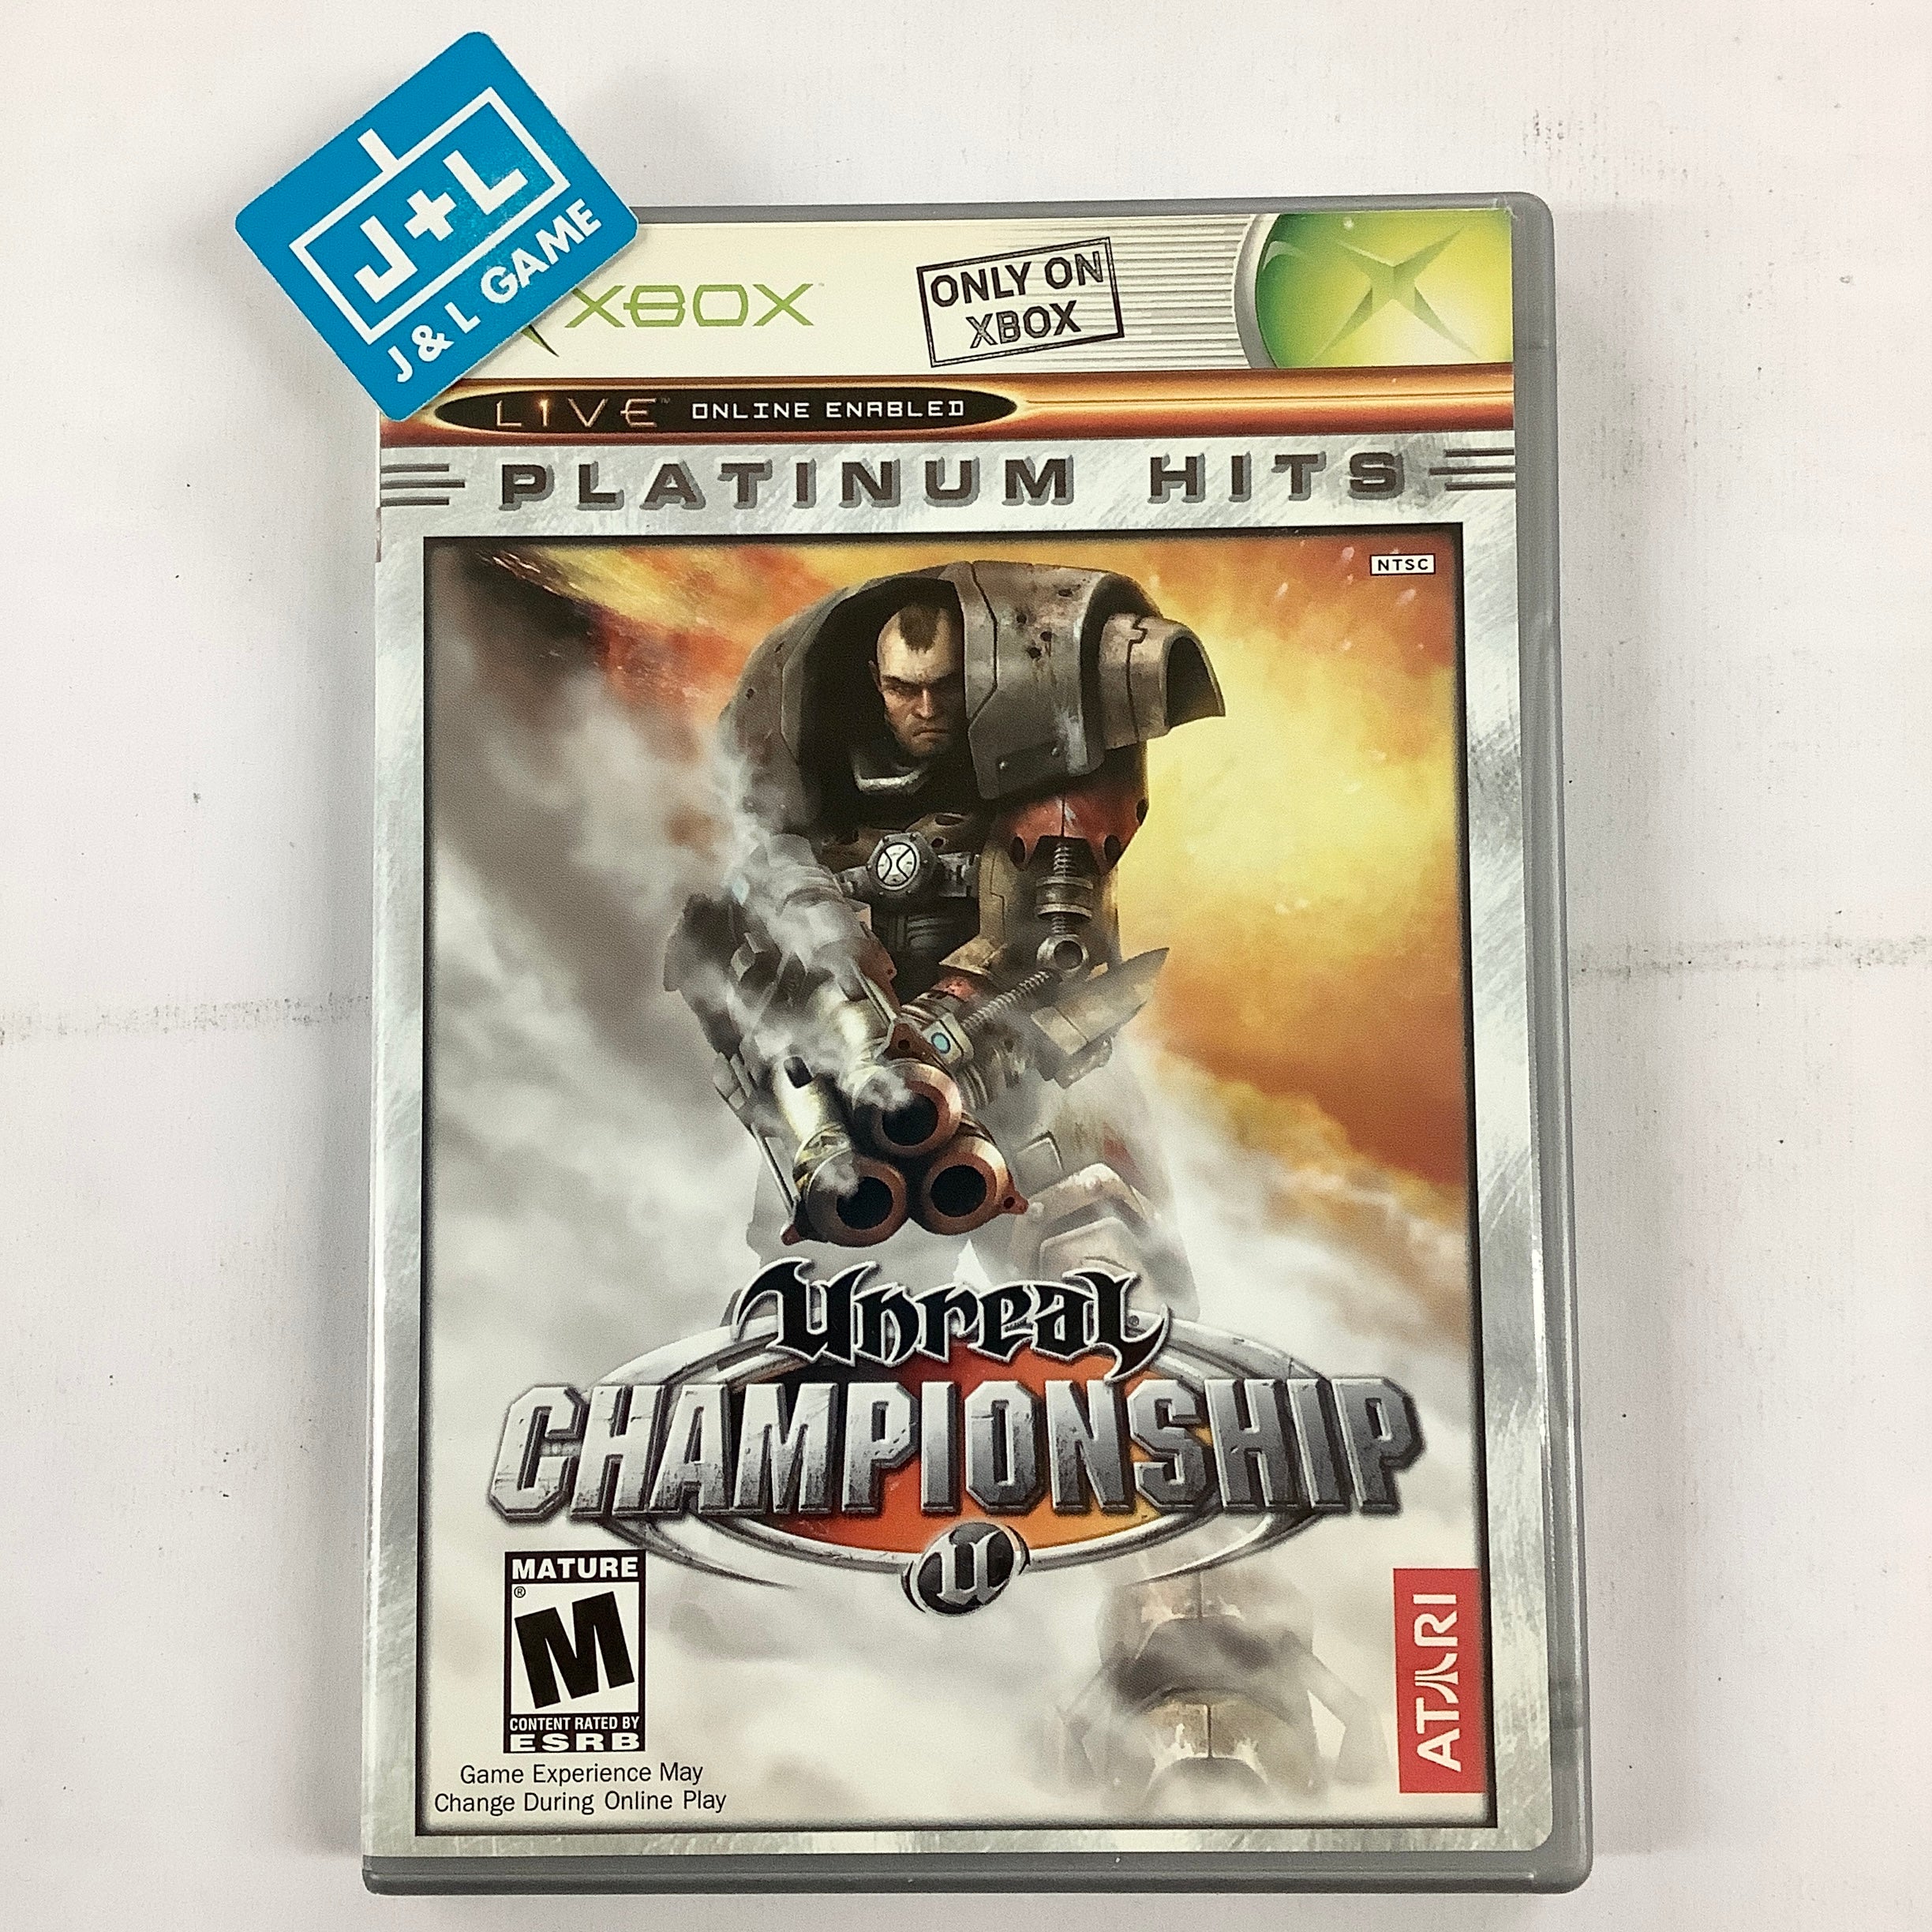 Unreal Championship (Platinum Hits) - (XB) Xbox [Pre-Owned] Video Games Atari SA   